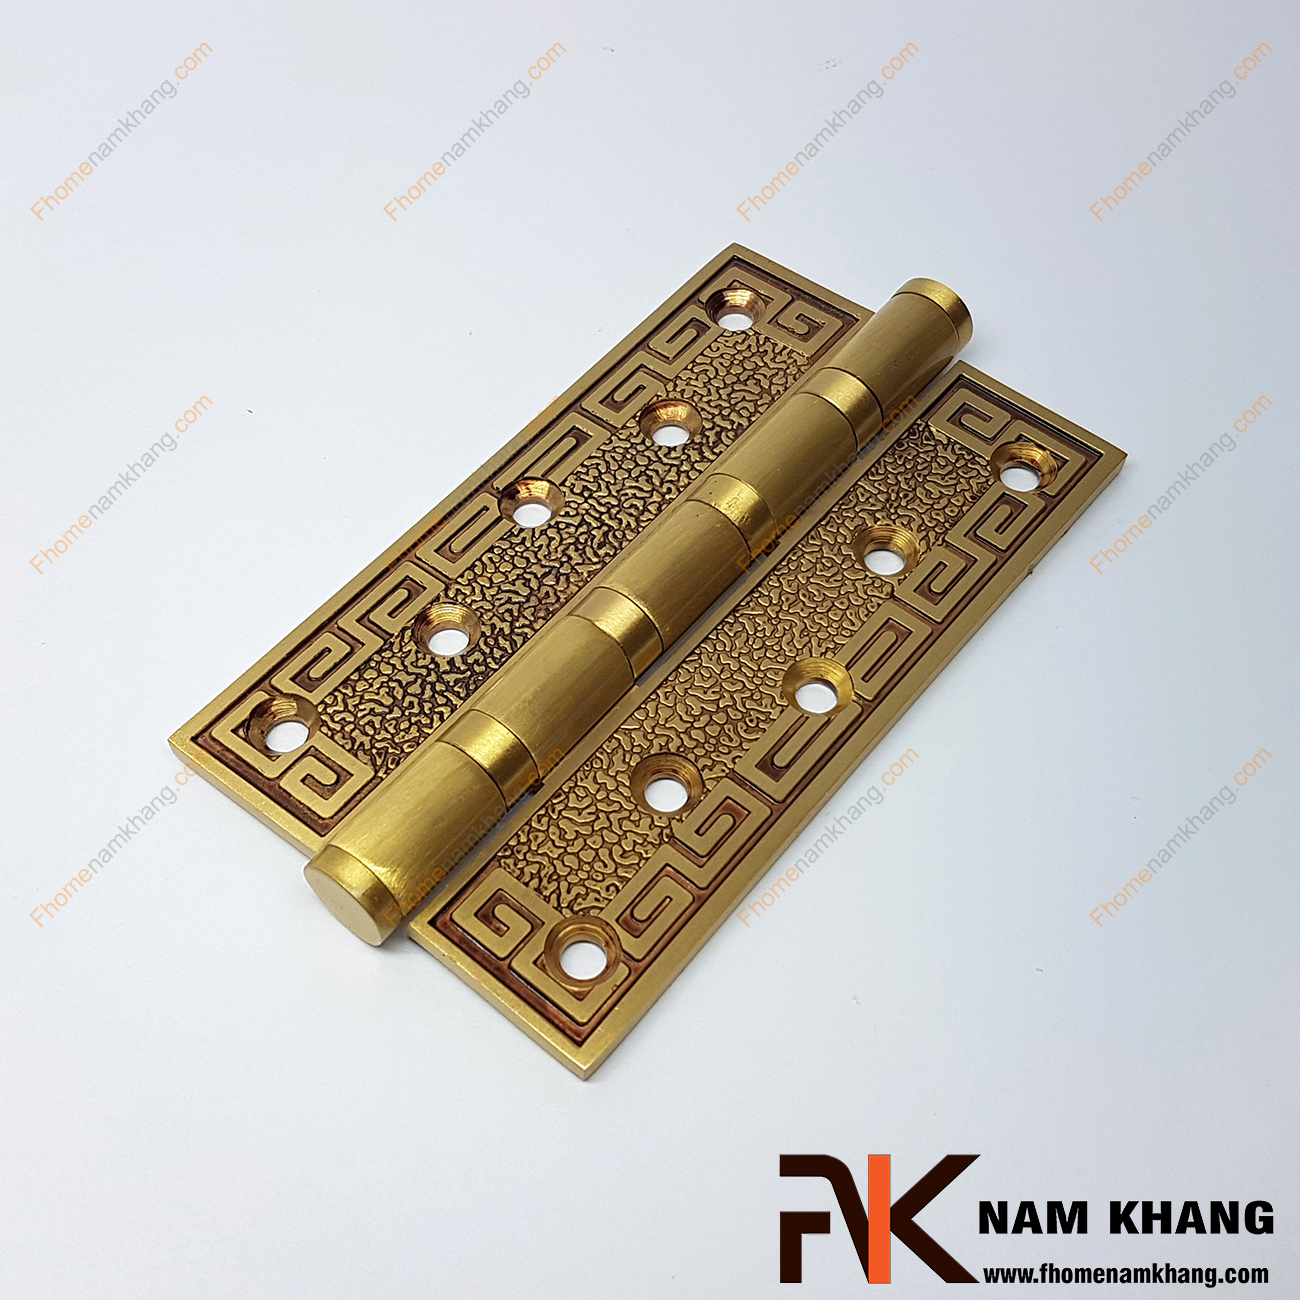 Bản lề cổ điển màu đồng vàng pha nâu đỏ NK199-46-4RC là loại phụ kiện nội thất không thể thiếu trong mỗi cánh cửa, là sản phẩm được đúc từ chất liệu đồng cao cấp có độ chắc chắn cao, giúp nâng cao tuổi thọ của cánh cửa.